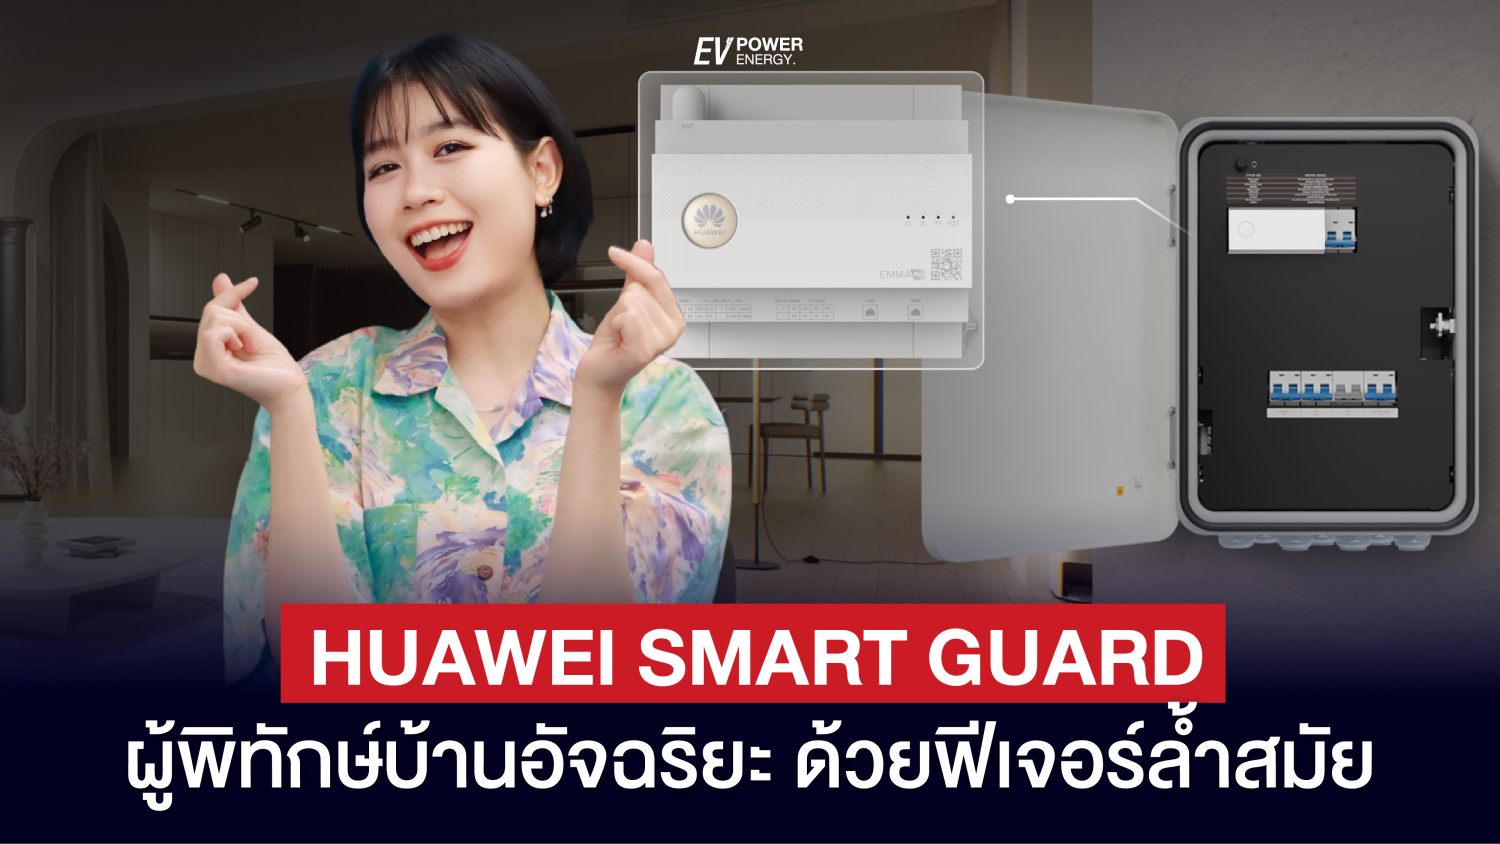 Huawei Smart Guard ผู้พิทักษ์บ้านอัจฉริยะ ด้วยฟีเจอร์ล้ำสมัย